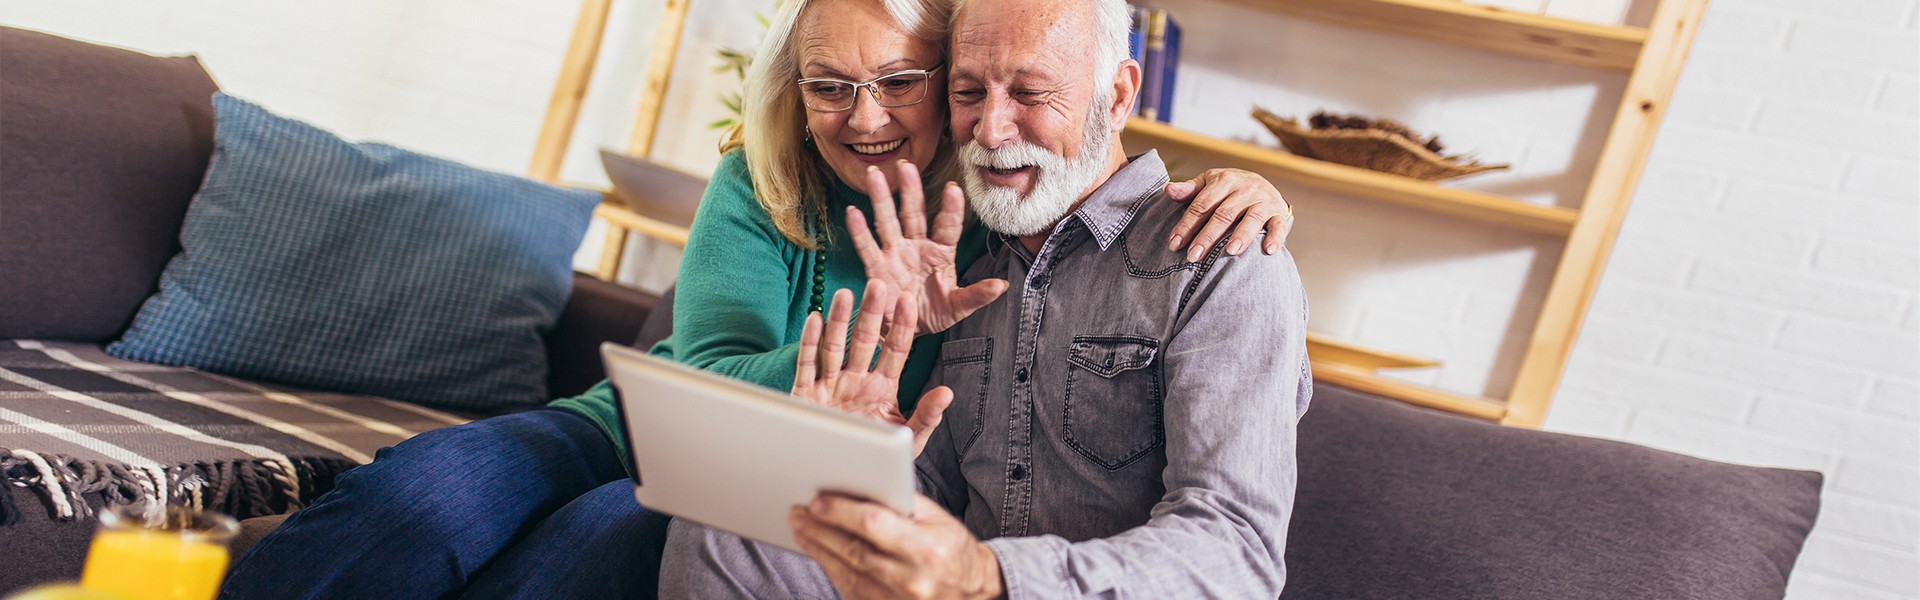 Ein älteres Paar schaut mit einem Lächeln in ein Tablet, das der Mann in der Hand hält